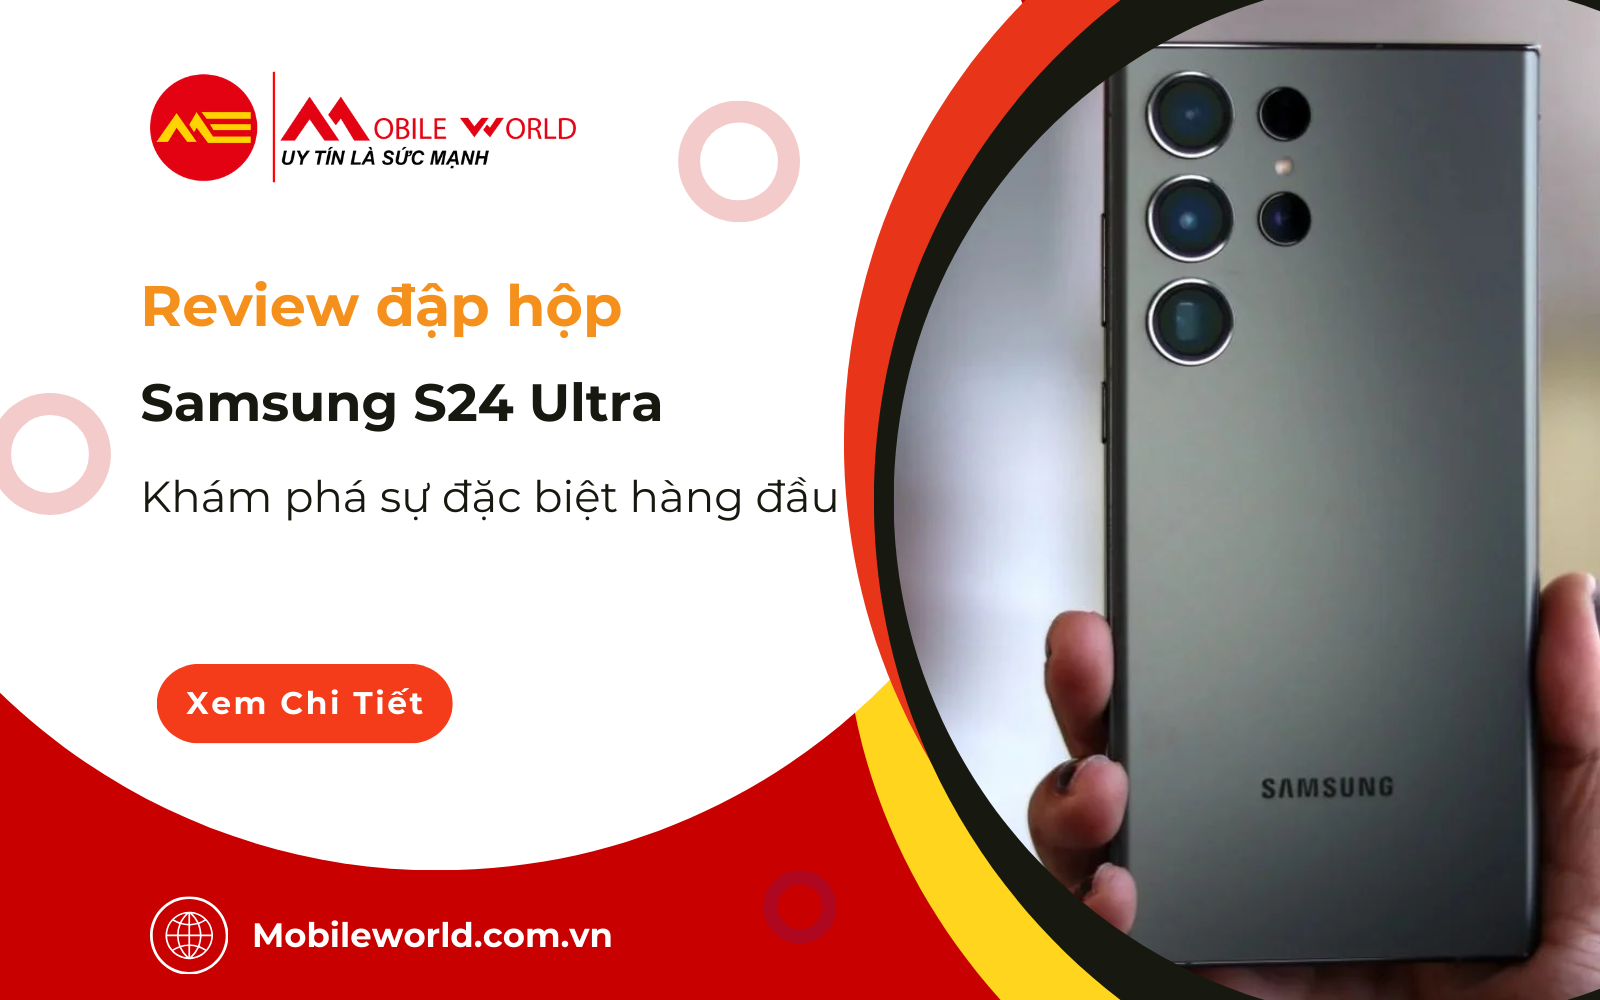 Review đập hộp Samsung S24 Ultra: Khám phá sự đặc biệt hàng đầu